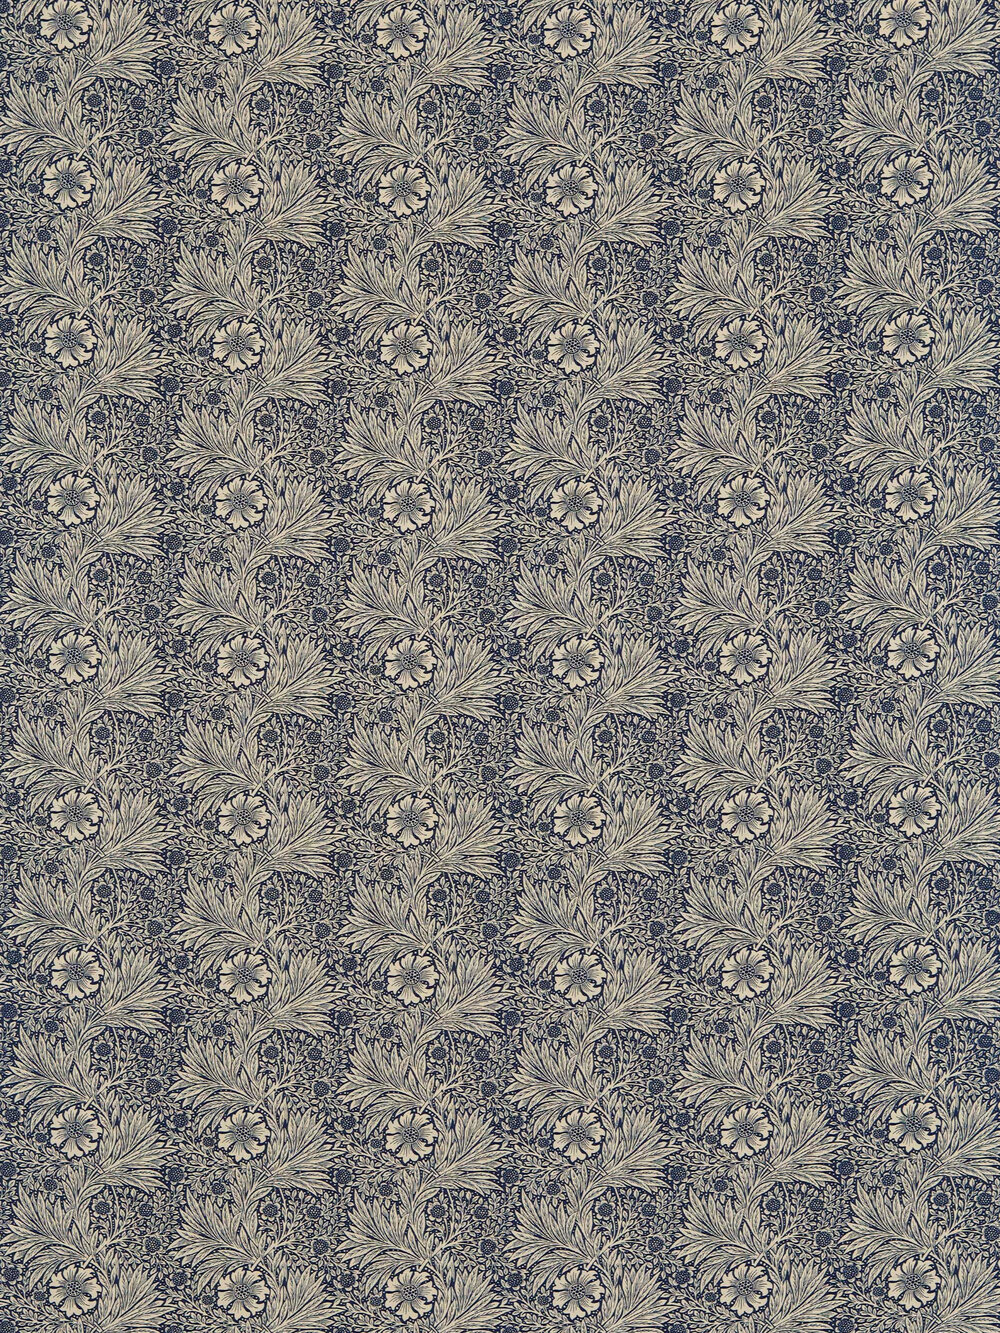 Marigold Fabric - Indigo / Linen - by Morris